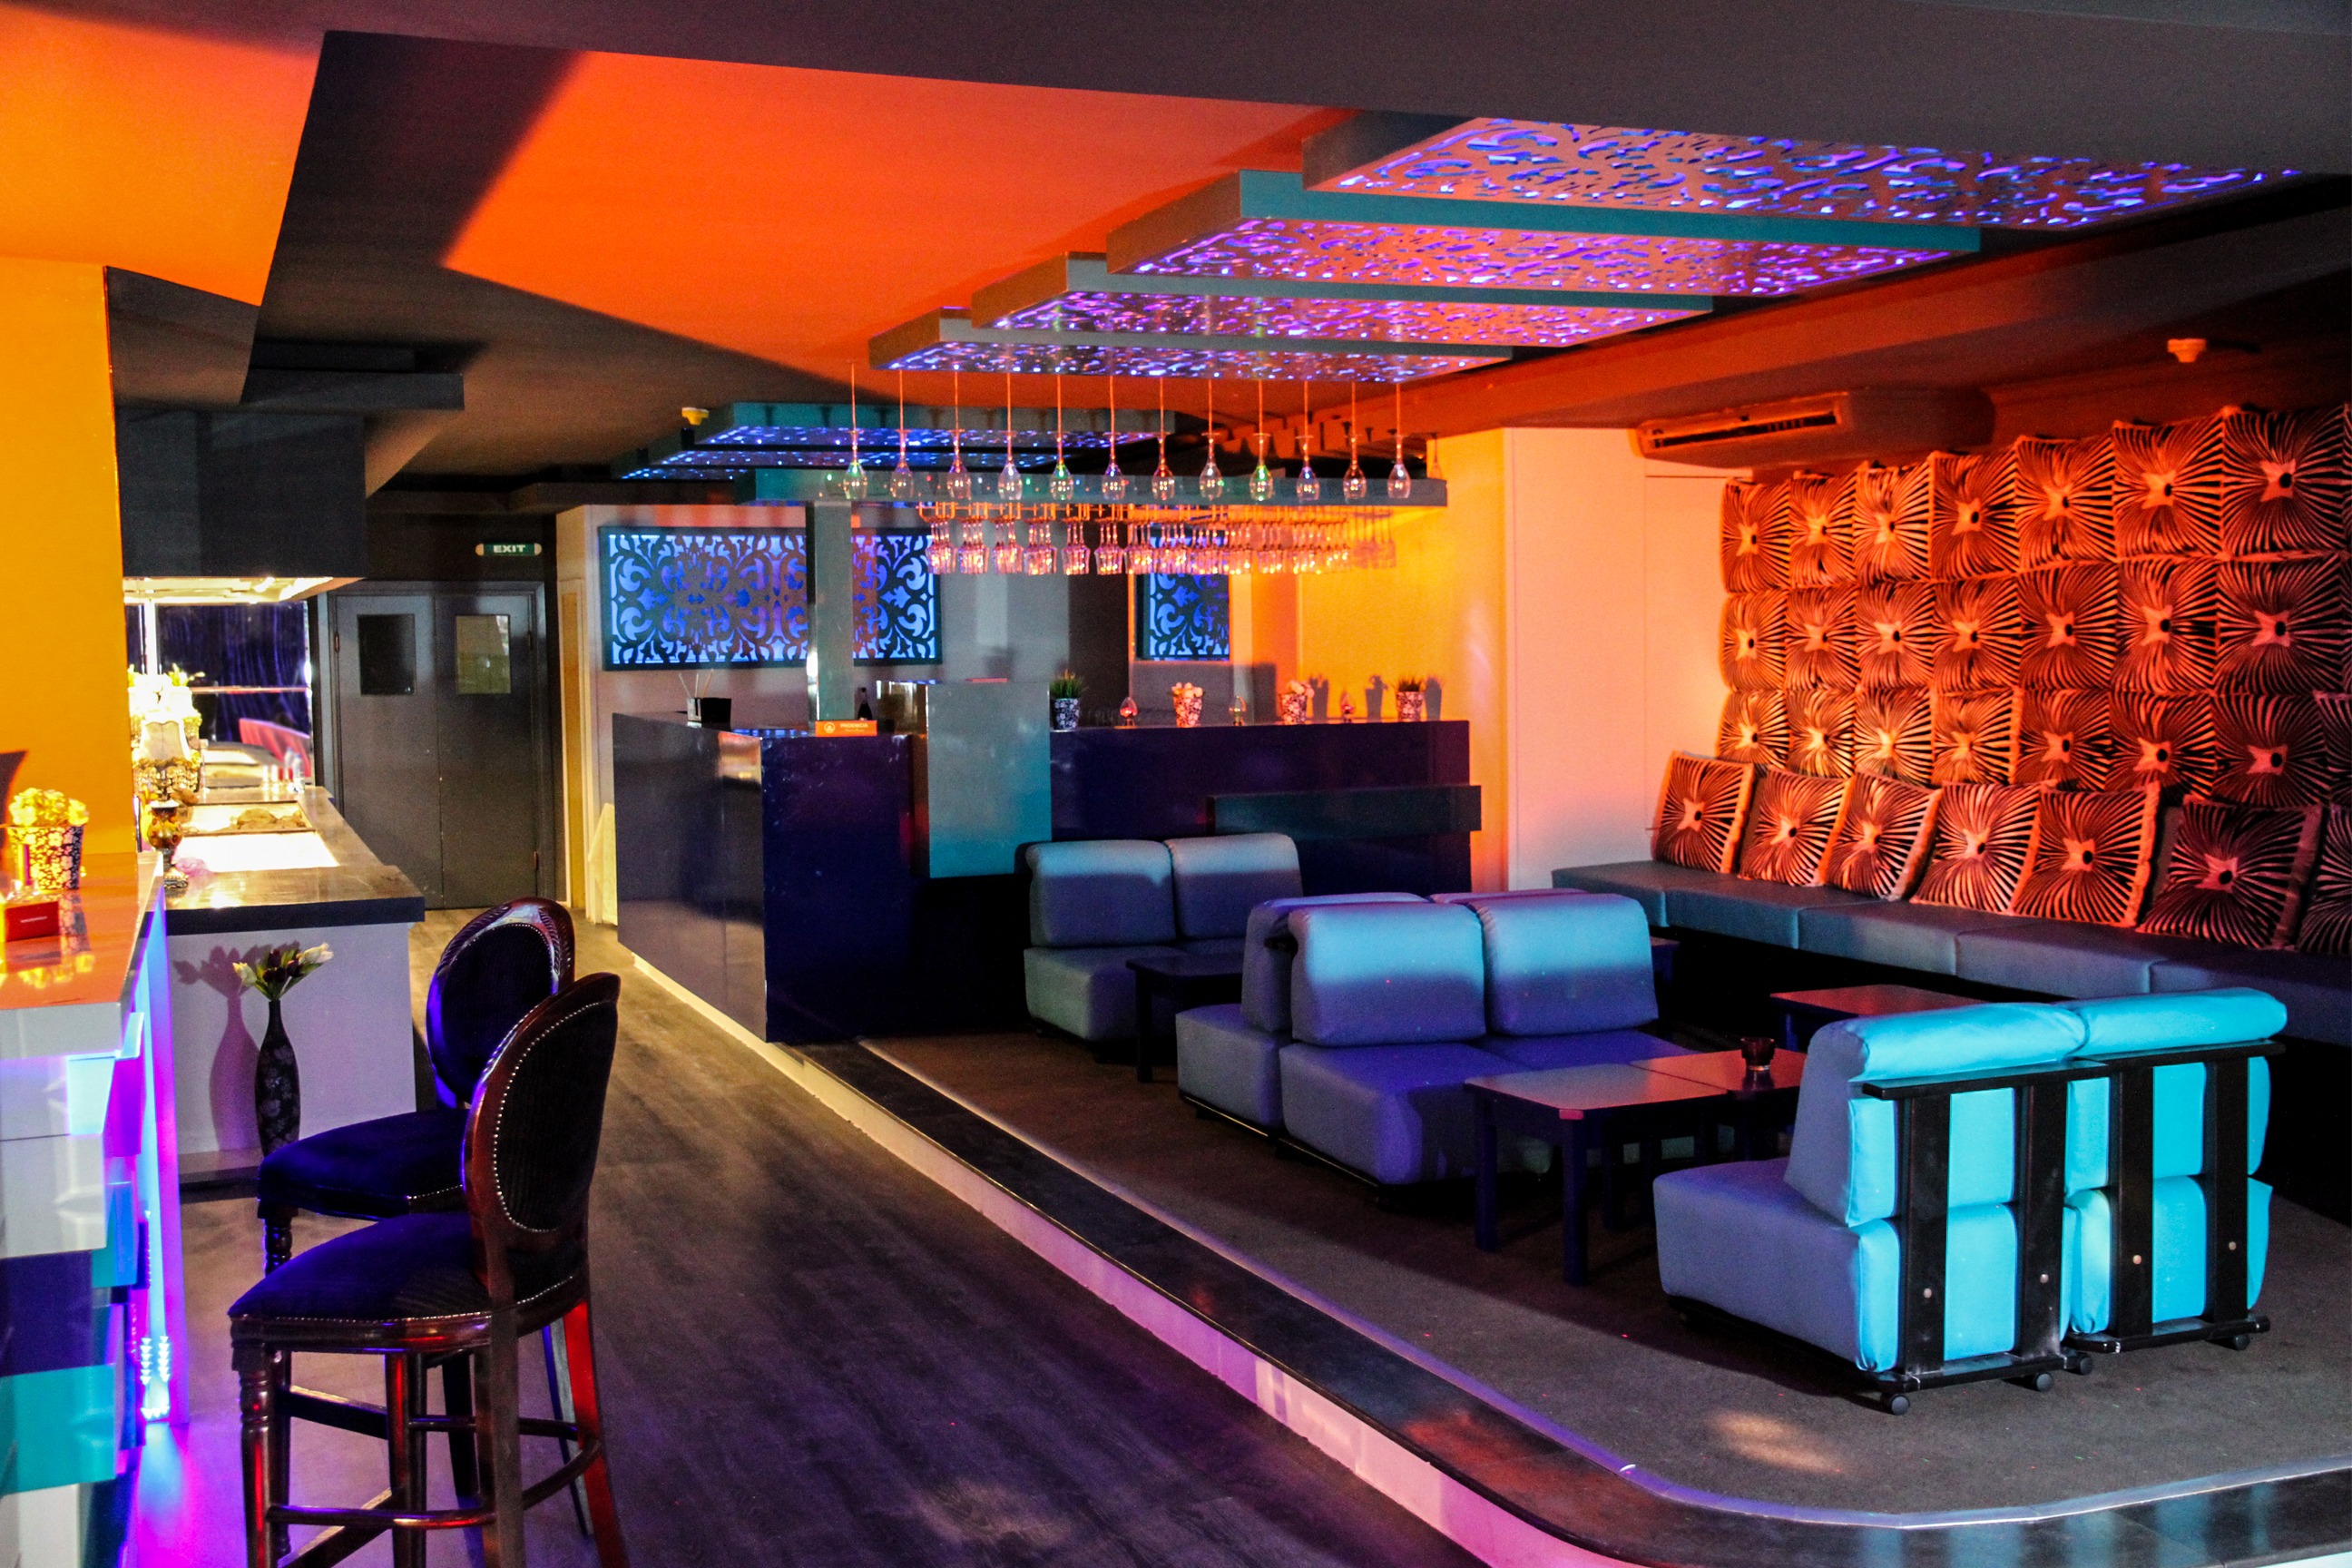 Quán bar thường được thiết kế và bố trí nhiều bàn ghế hơn so với club, để mọi người có thể có nhiều không gian thưởng thức đồ uống và các trò chơi giải trí. Phong cách của các quán bar cũng hướng tới sự thưởng thức và thư giãn.